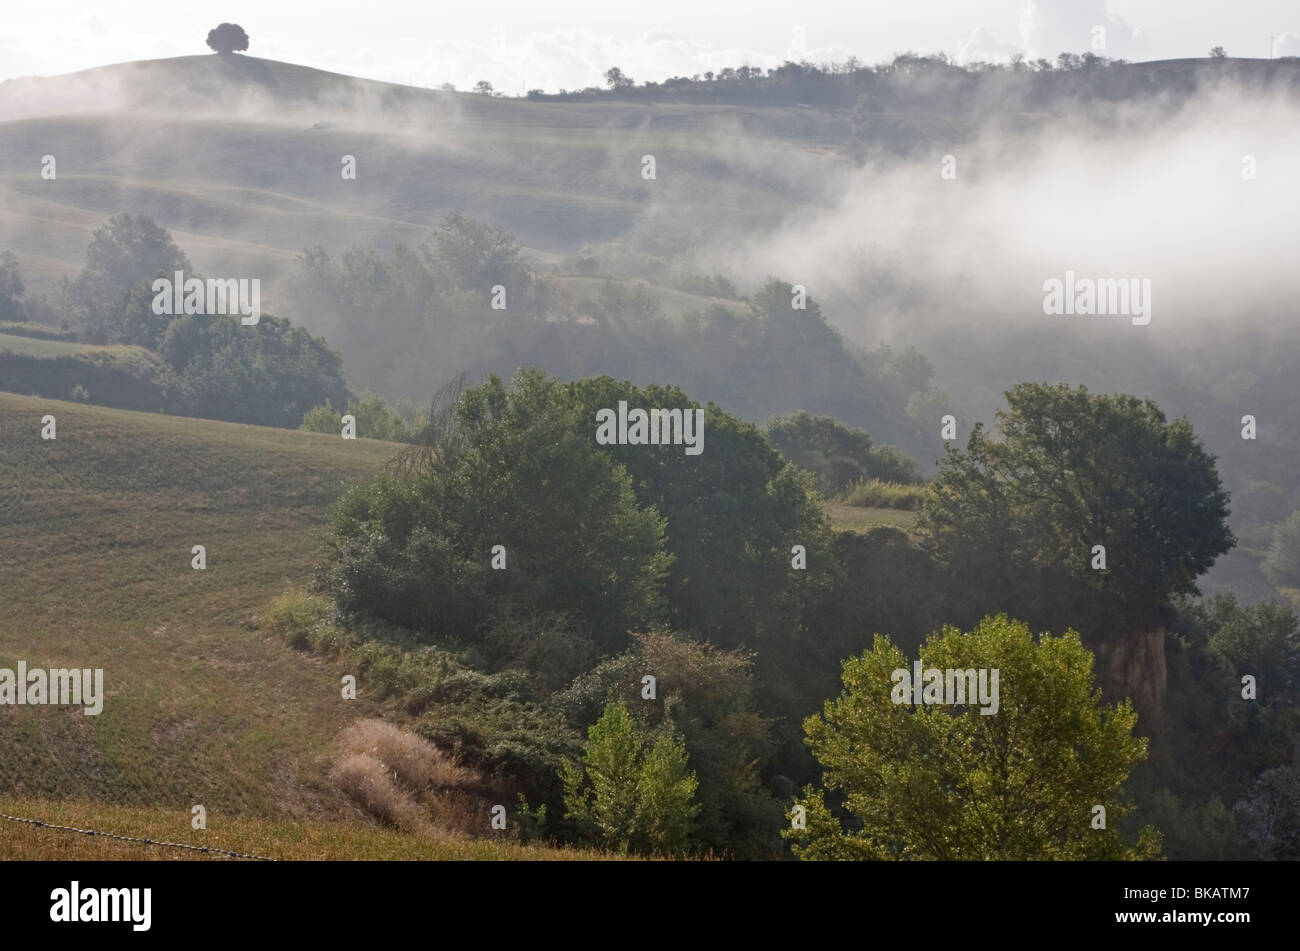 Early morning fog at Tuscany, Italy Stock Photo